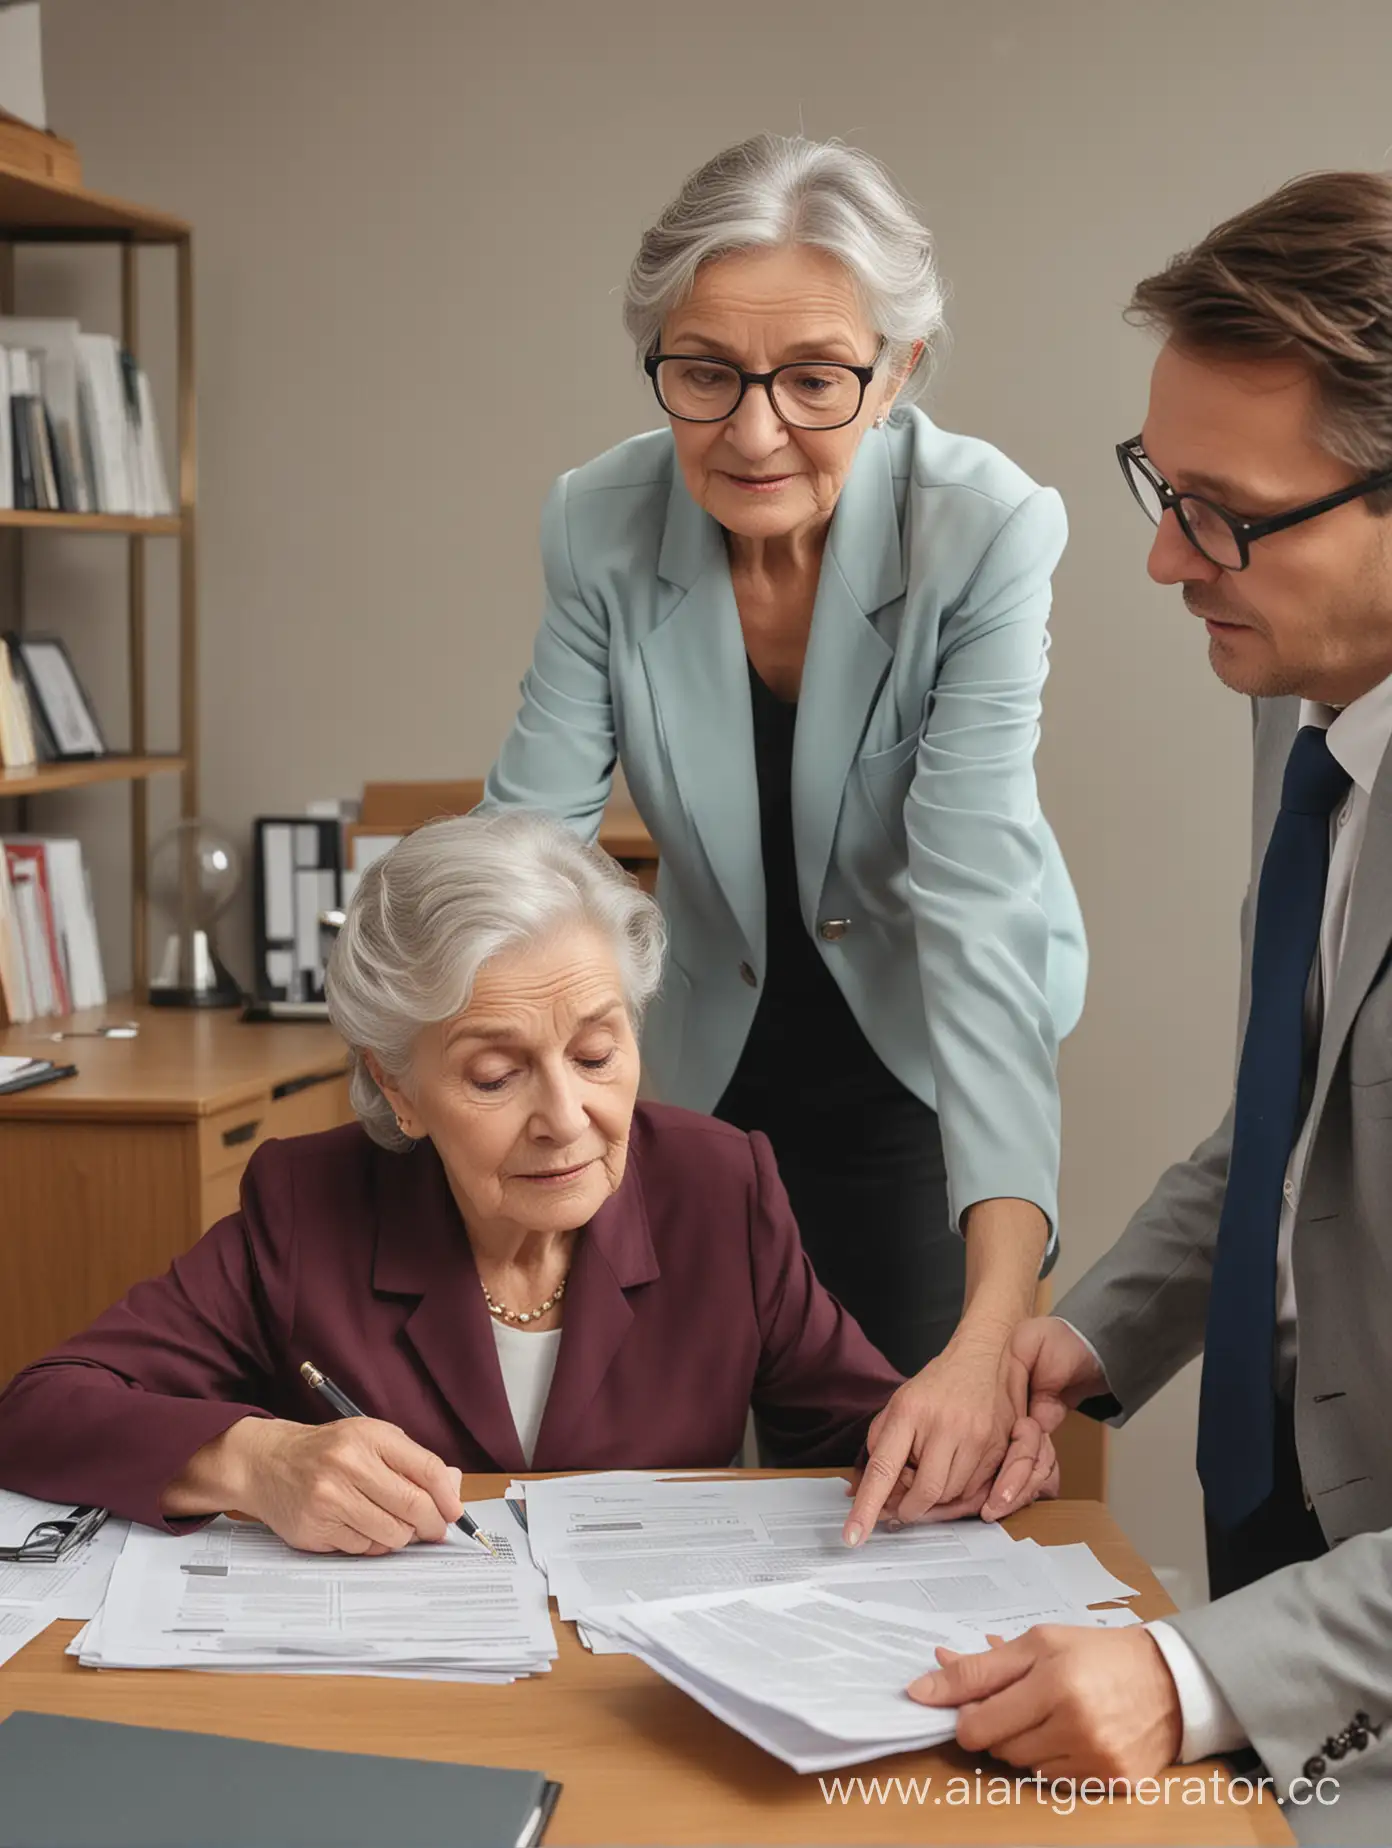 старик юрист помогает пожилой женщине с бумагами, современный офис, общий план, цветное изображение, четкие лица